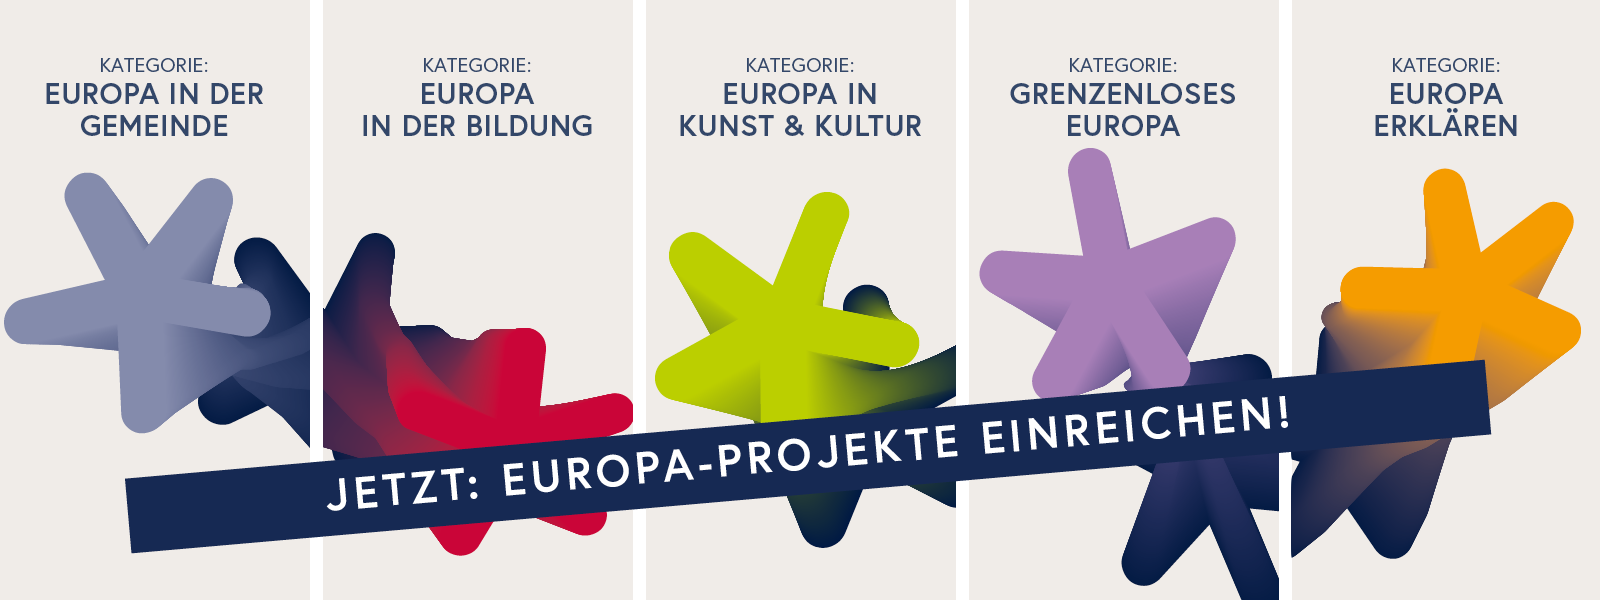 Jetzt: Europa-Projekte einreichen!